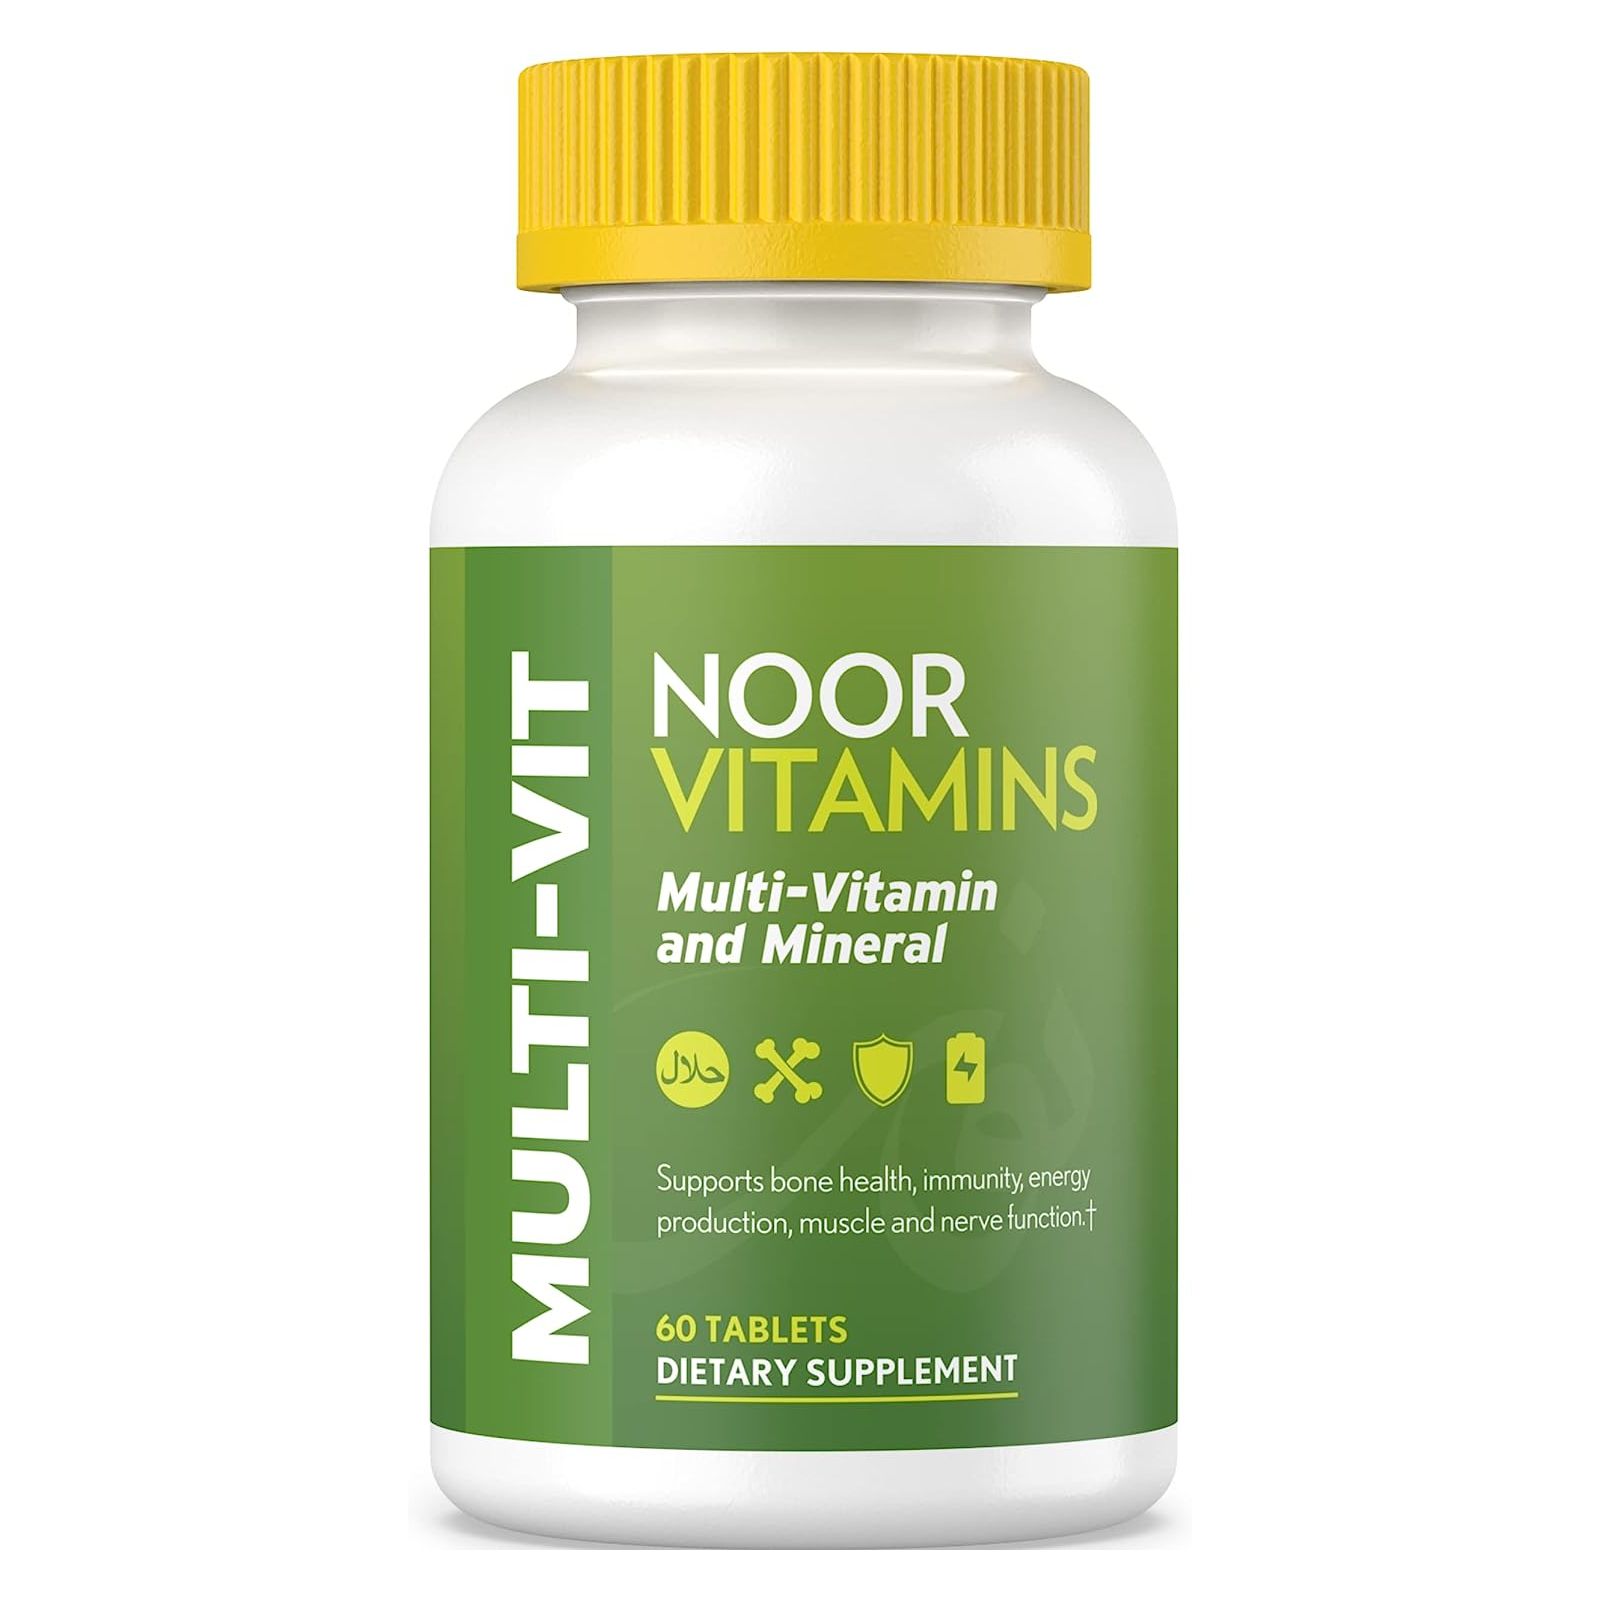 Мультивитамины Noor Vitamins Halal Daily, 60 таблеток noor витамины мультивитамины и минералы 60 таблеток noor vitamins